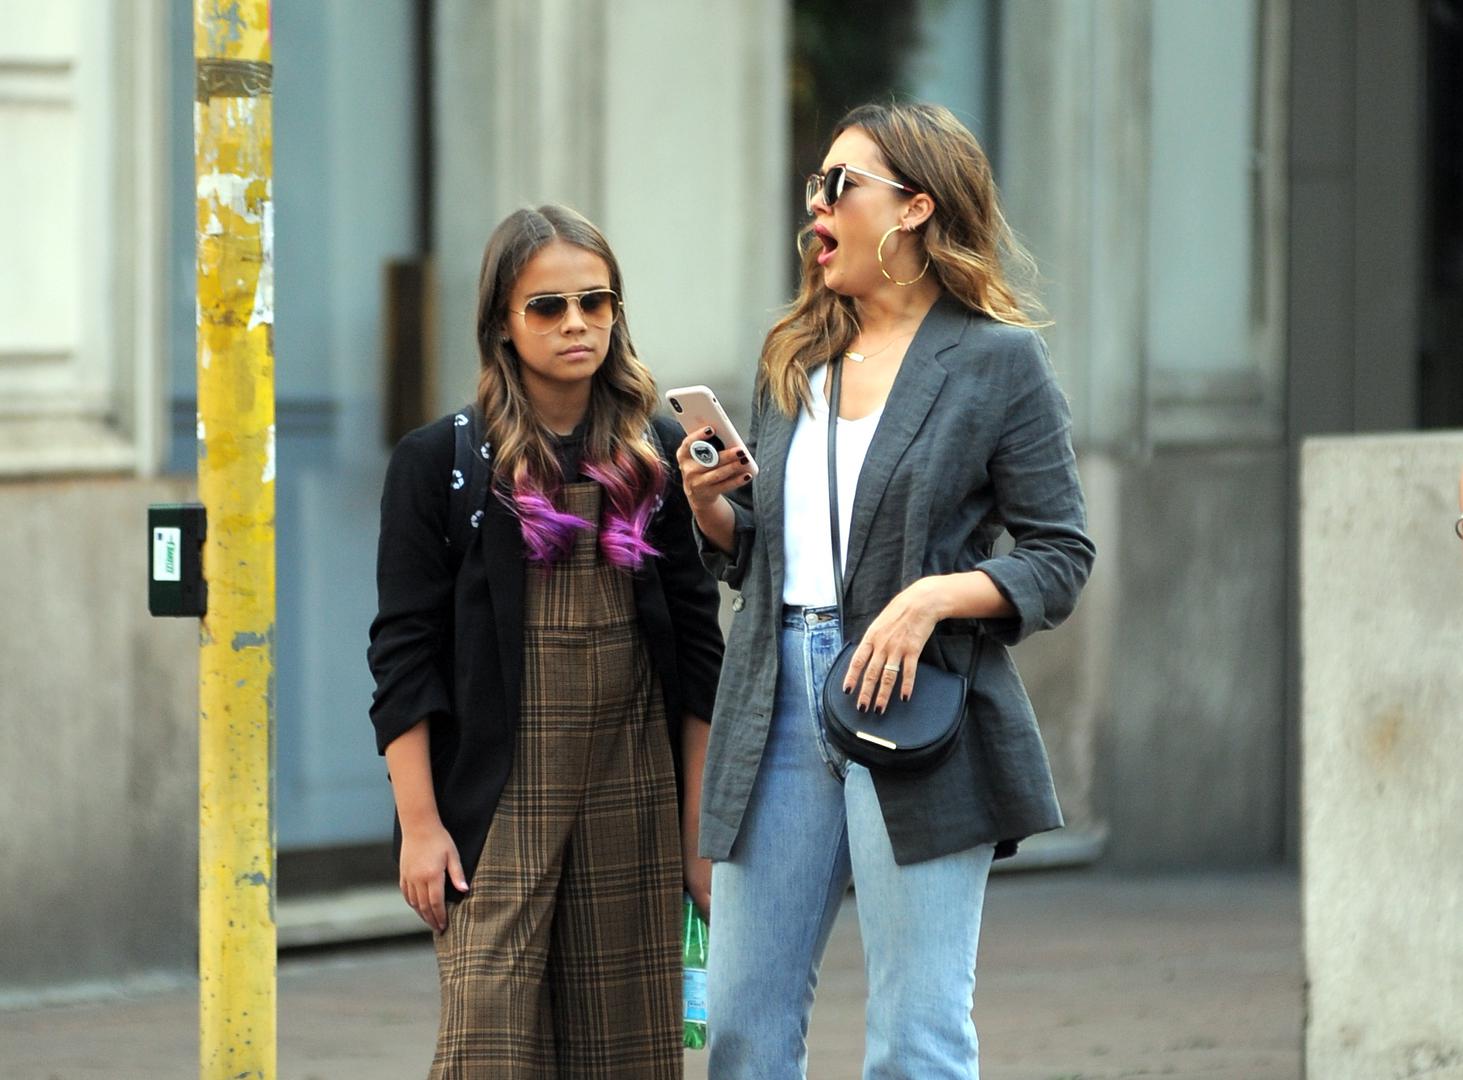 Na fotografijama snimljenim na ulicama Milana 37-godišnja Jessica i desetogodišnja Honor izgledaju kao dvije sestre  koje zajedno idu u šoping, a ne kao mama i kći. 